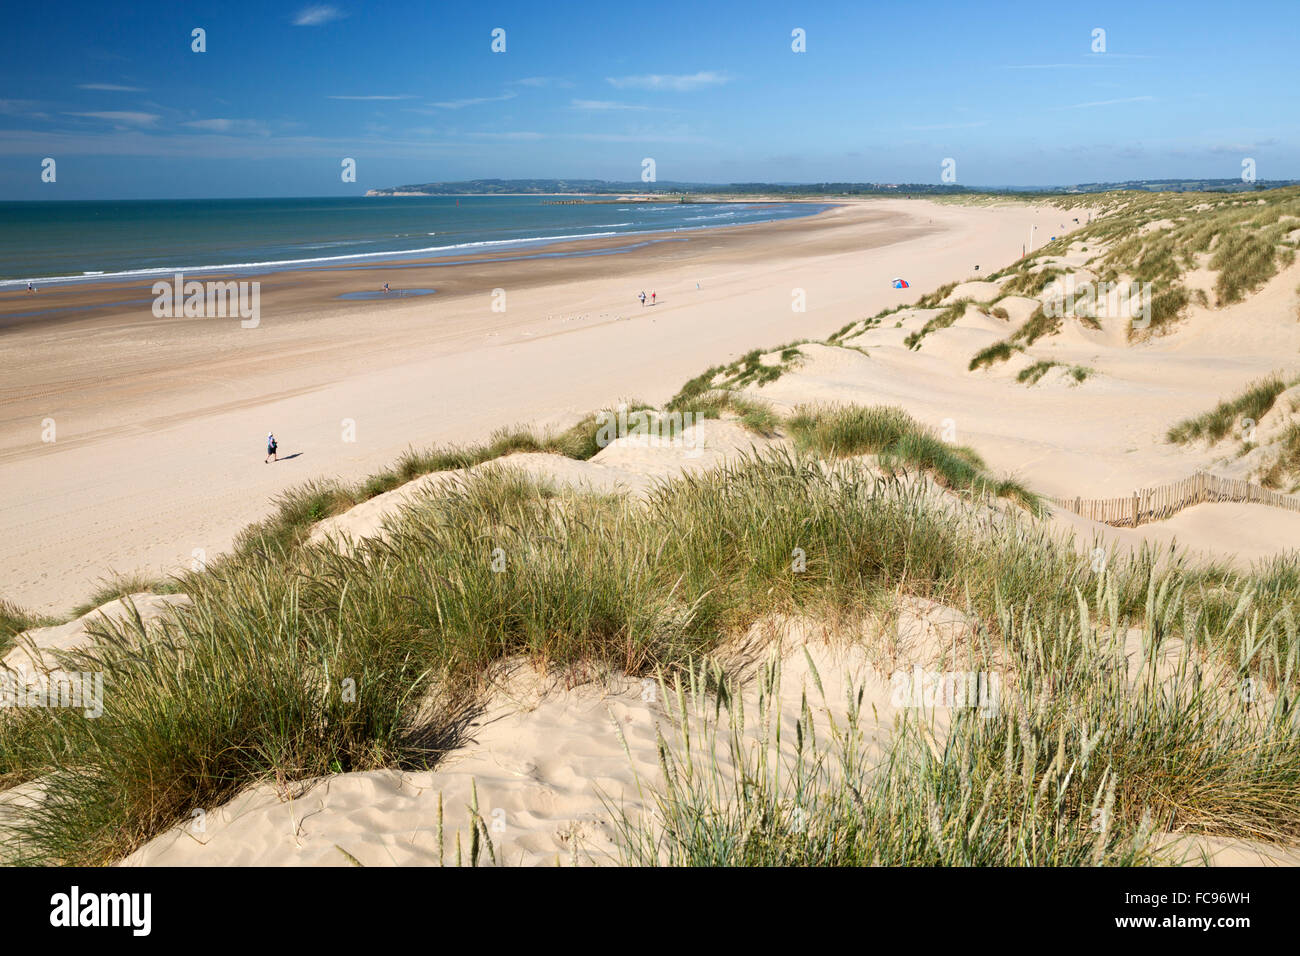 Dunes de sable et la plage, Camber Sands, carrossage, près de Rye, East Sussex, Angleterre, Royaume-Uni, Europe Banque D'Images